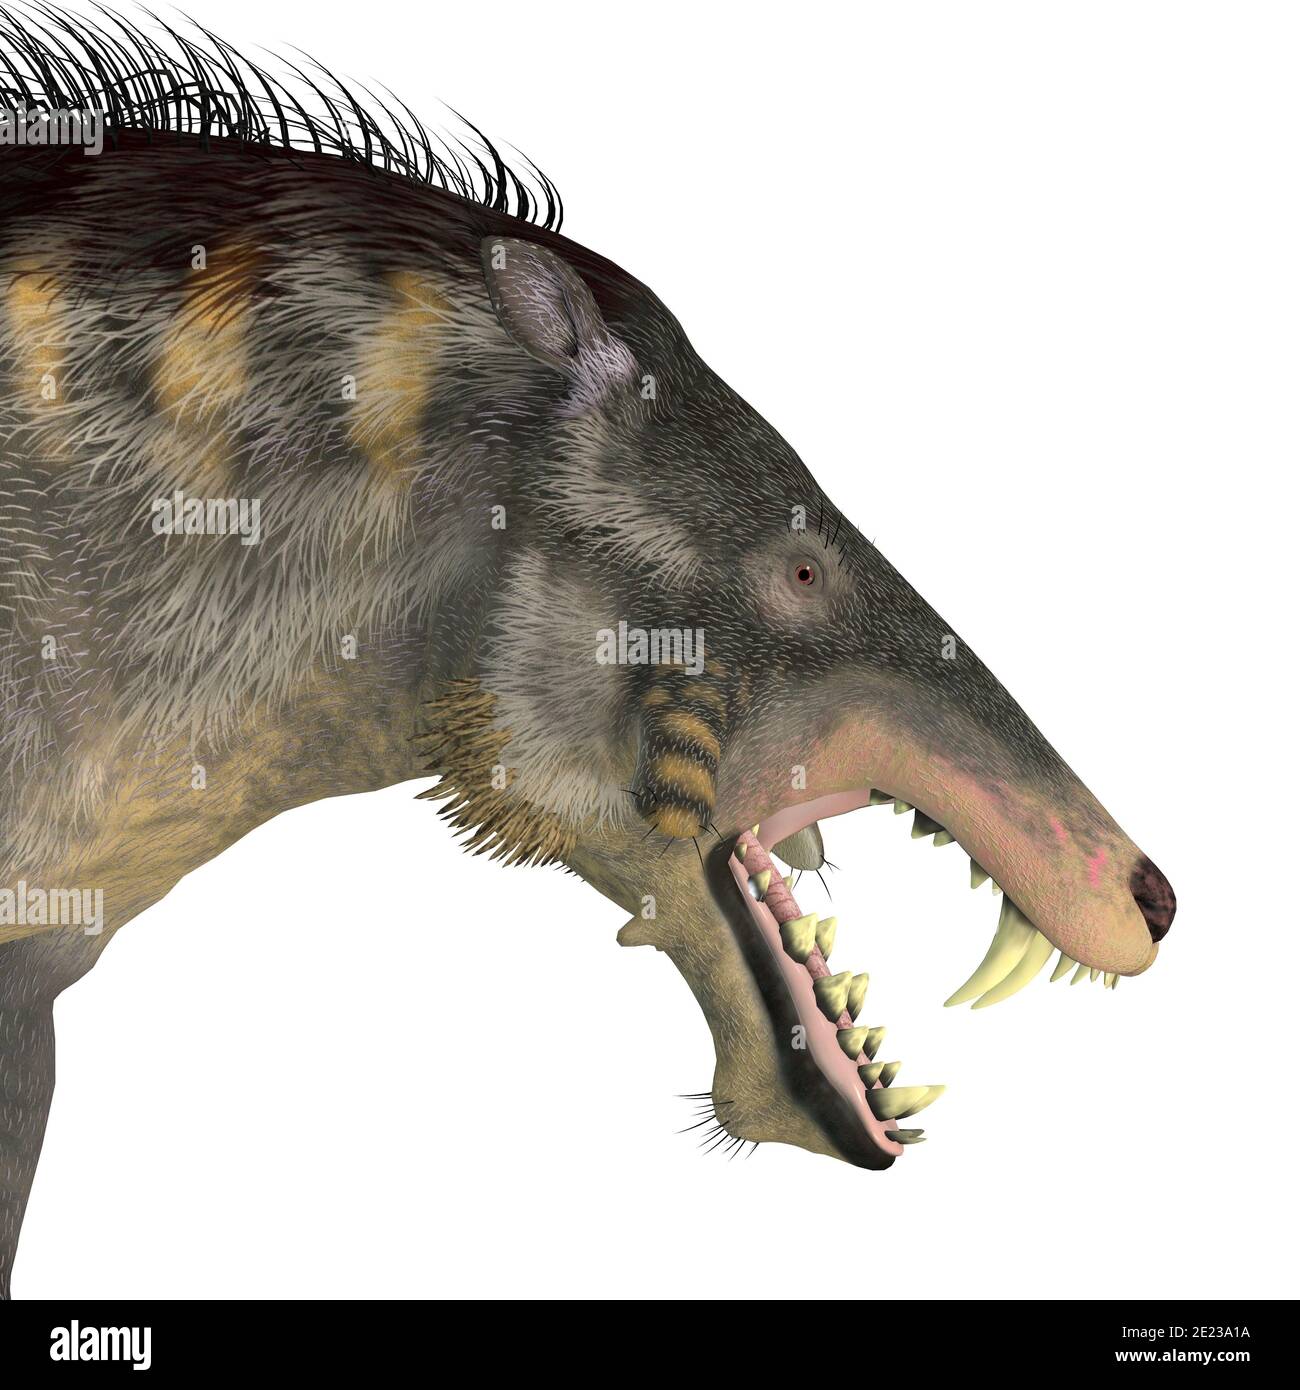 Entelodont war ein allesfressendes Schwein, das während der Eozän- und Oligozän-Zeiten Europas, Eurasiens und Asiens lebte. Stockfoto